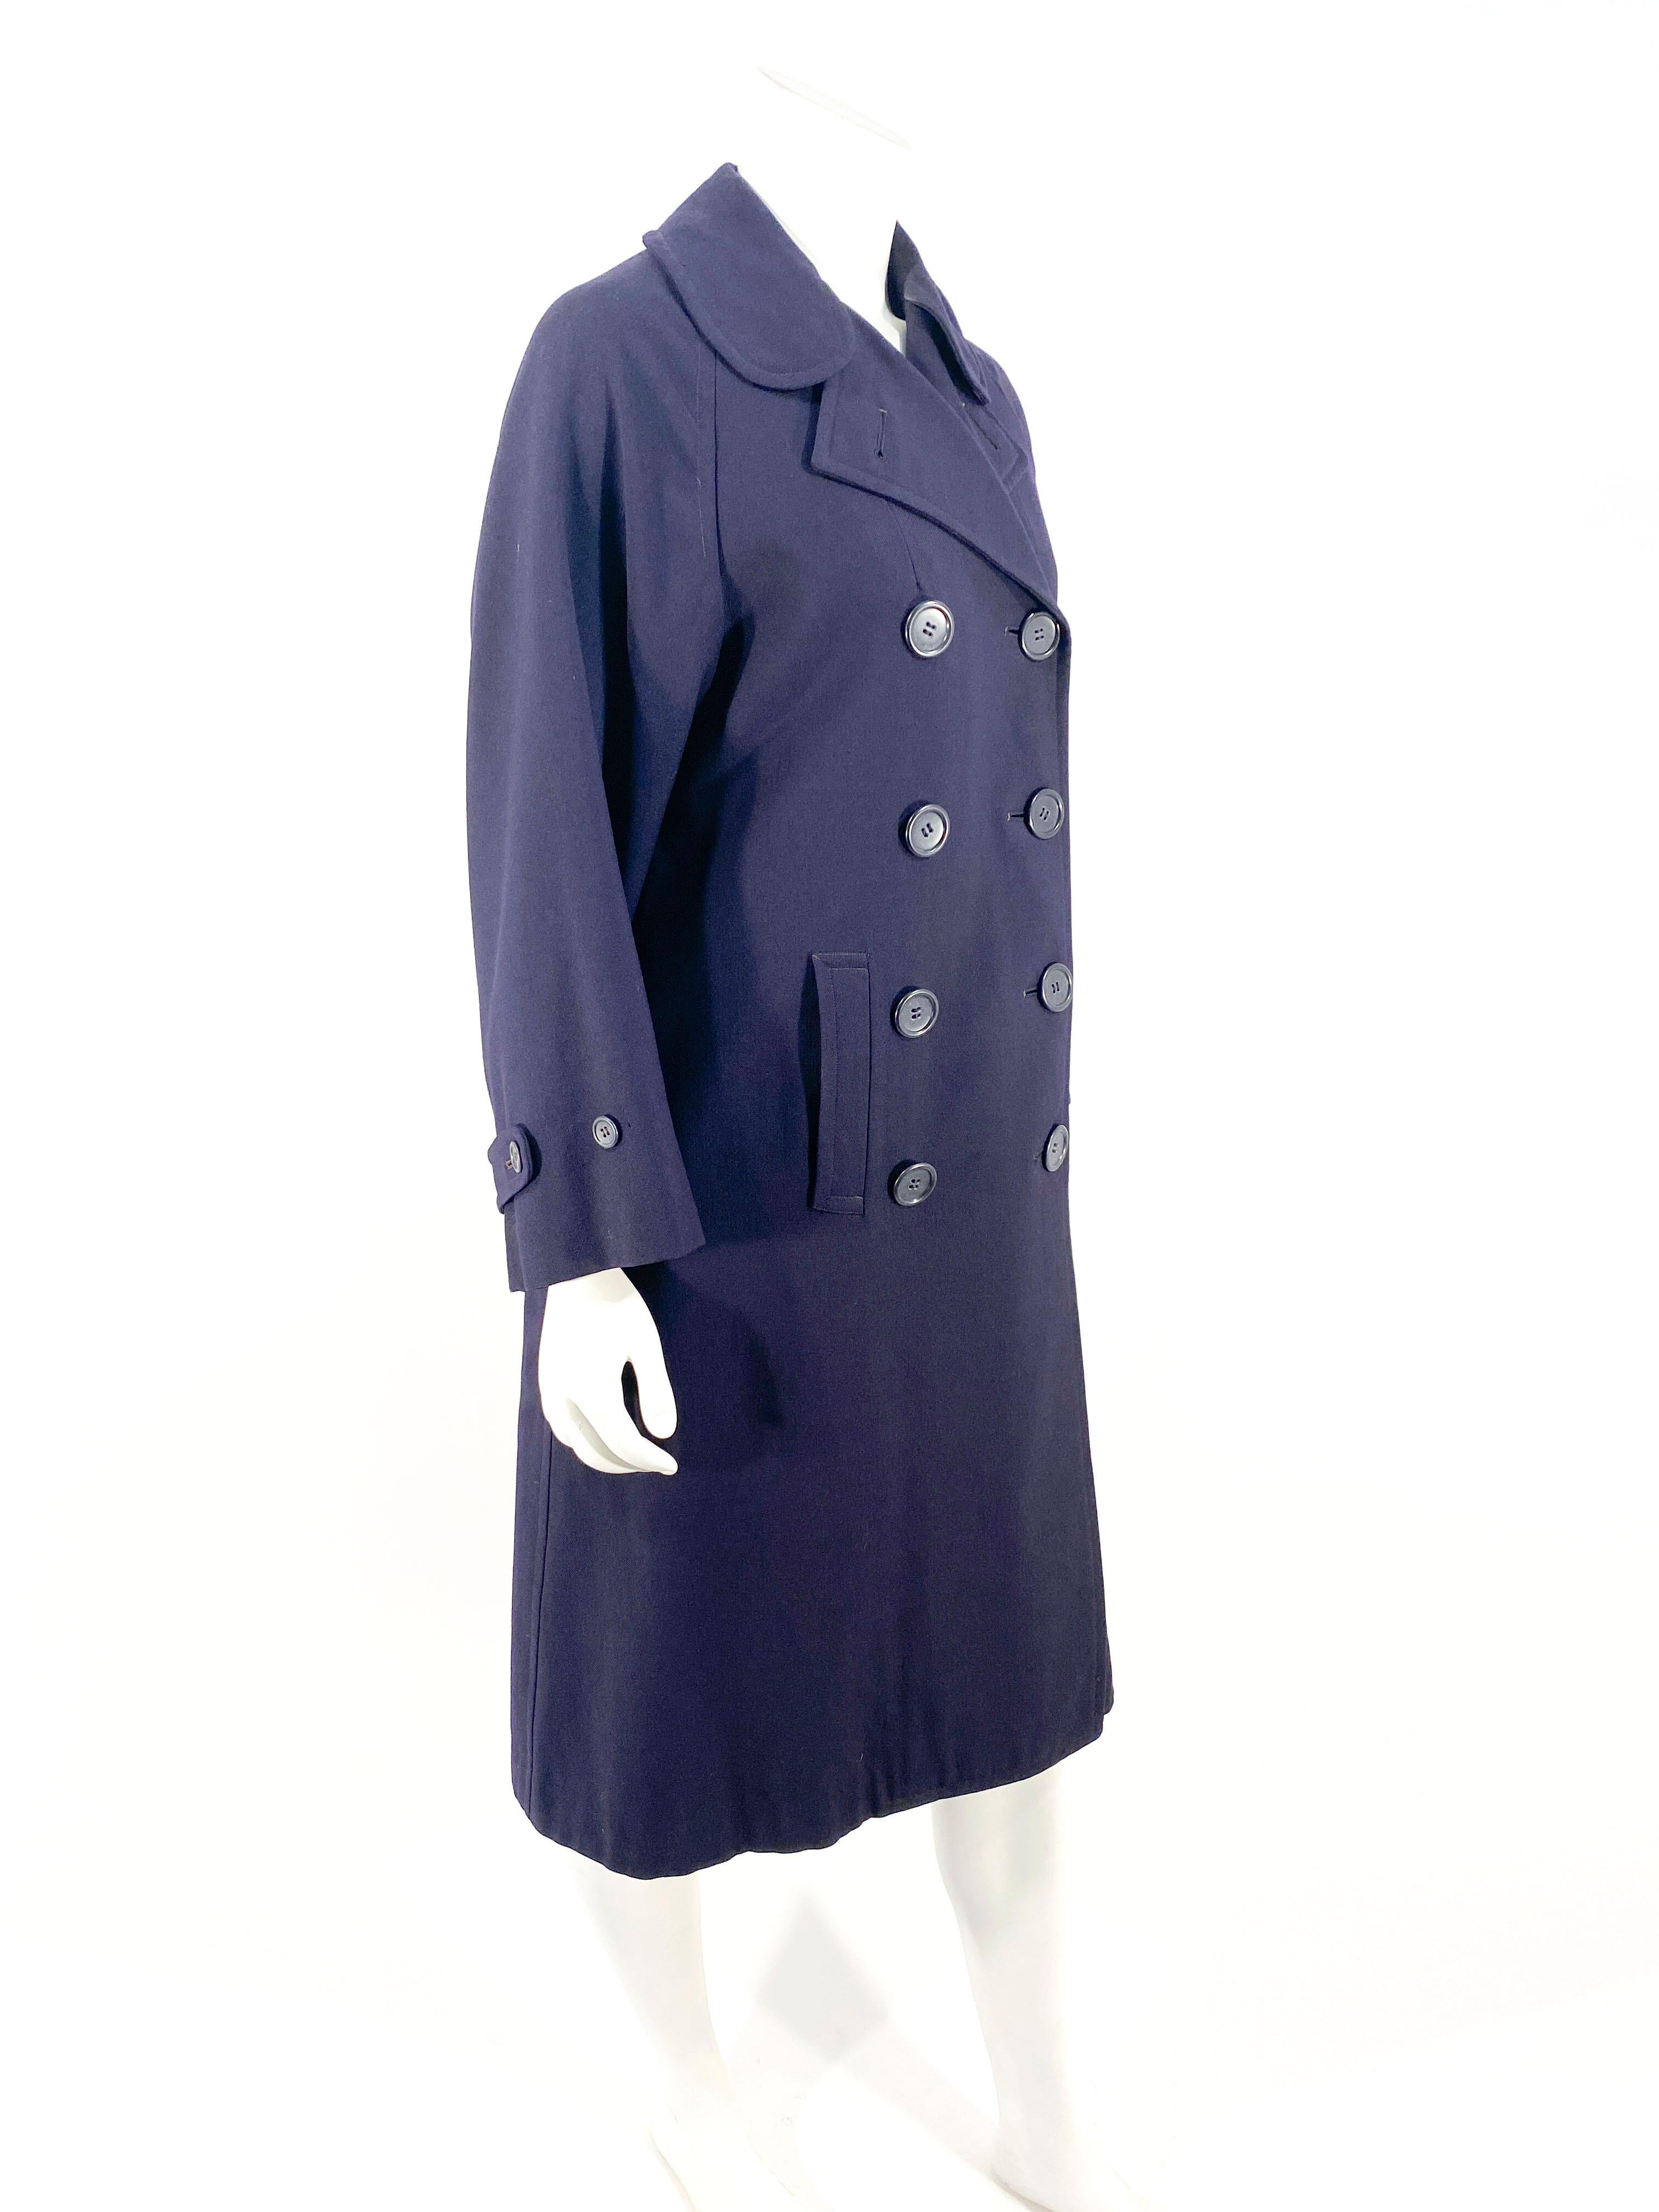 1940s overcoat